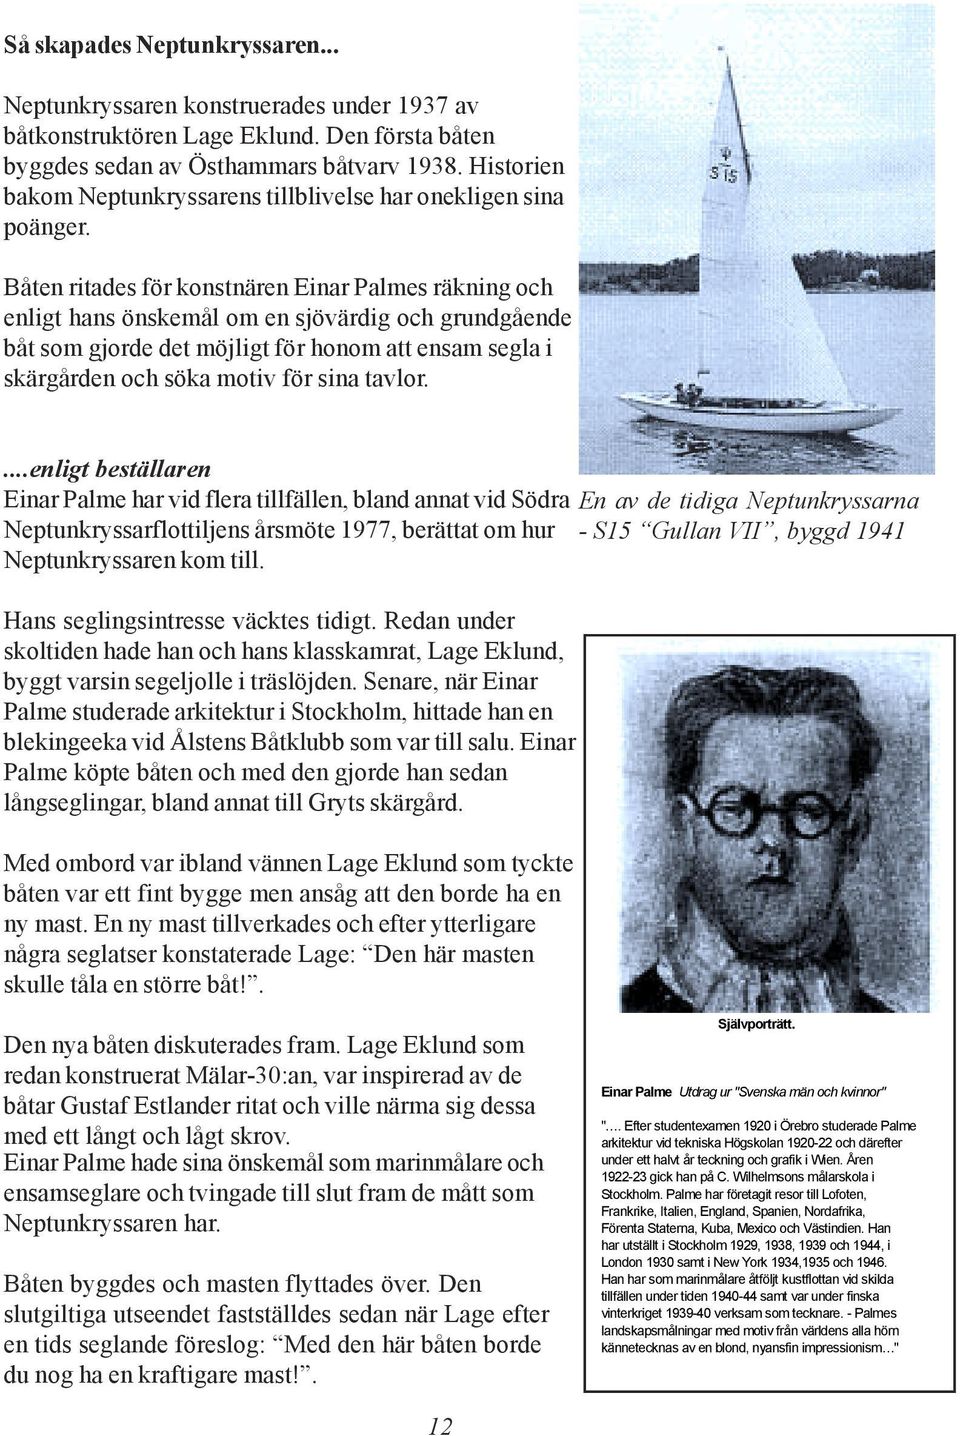 Båten ritades för konstnären Einar Palmes räkning och enligt hans önskemål om en sjövärdig och grundgående båt som gjorde det möjligt för honom att ensam segla i skärgården och söka motiv för sina